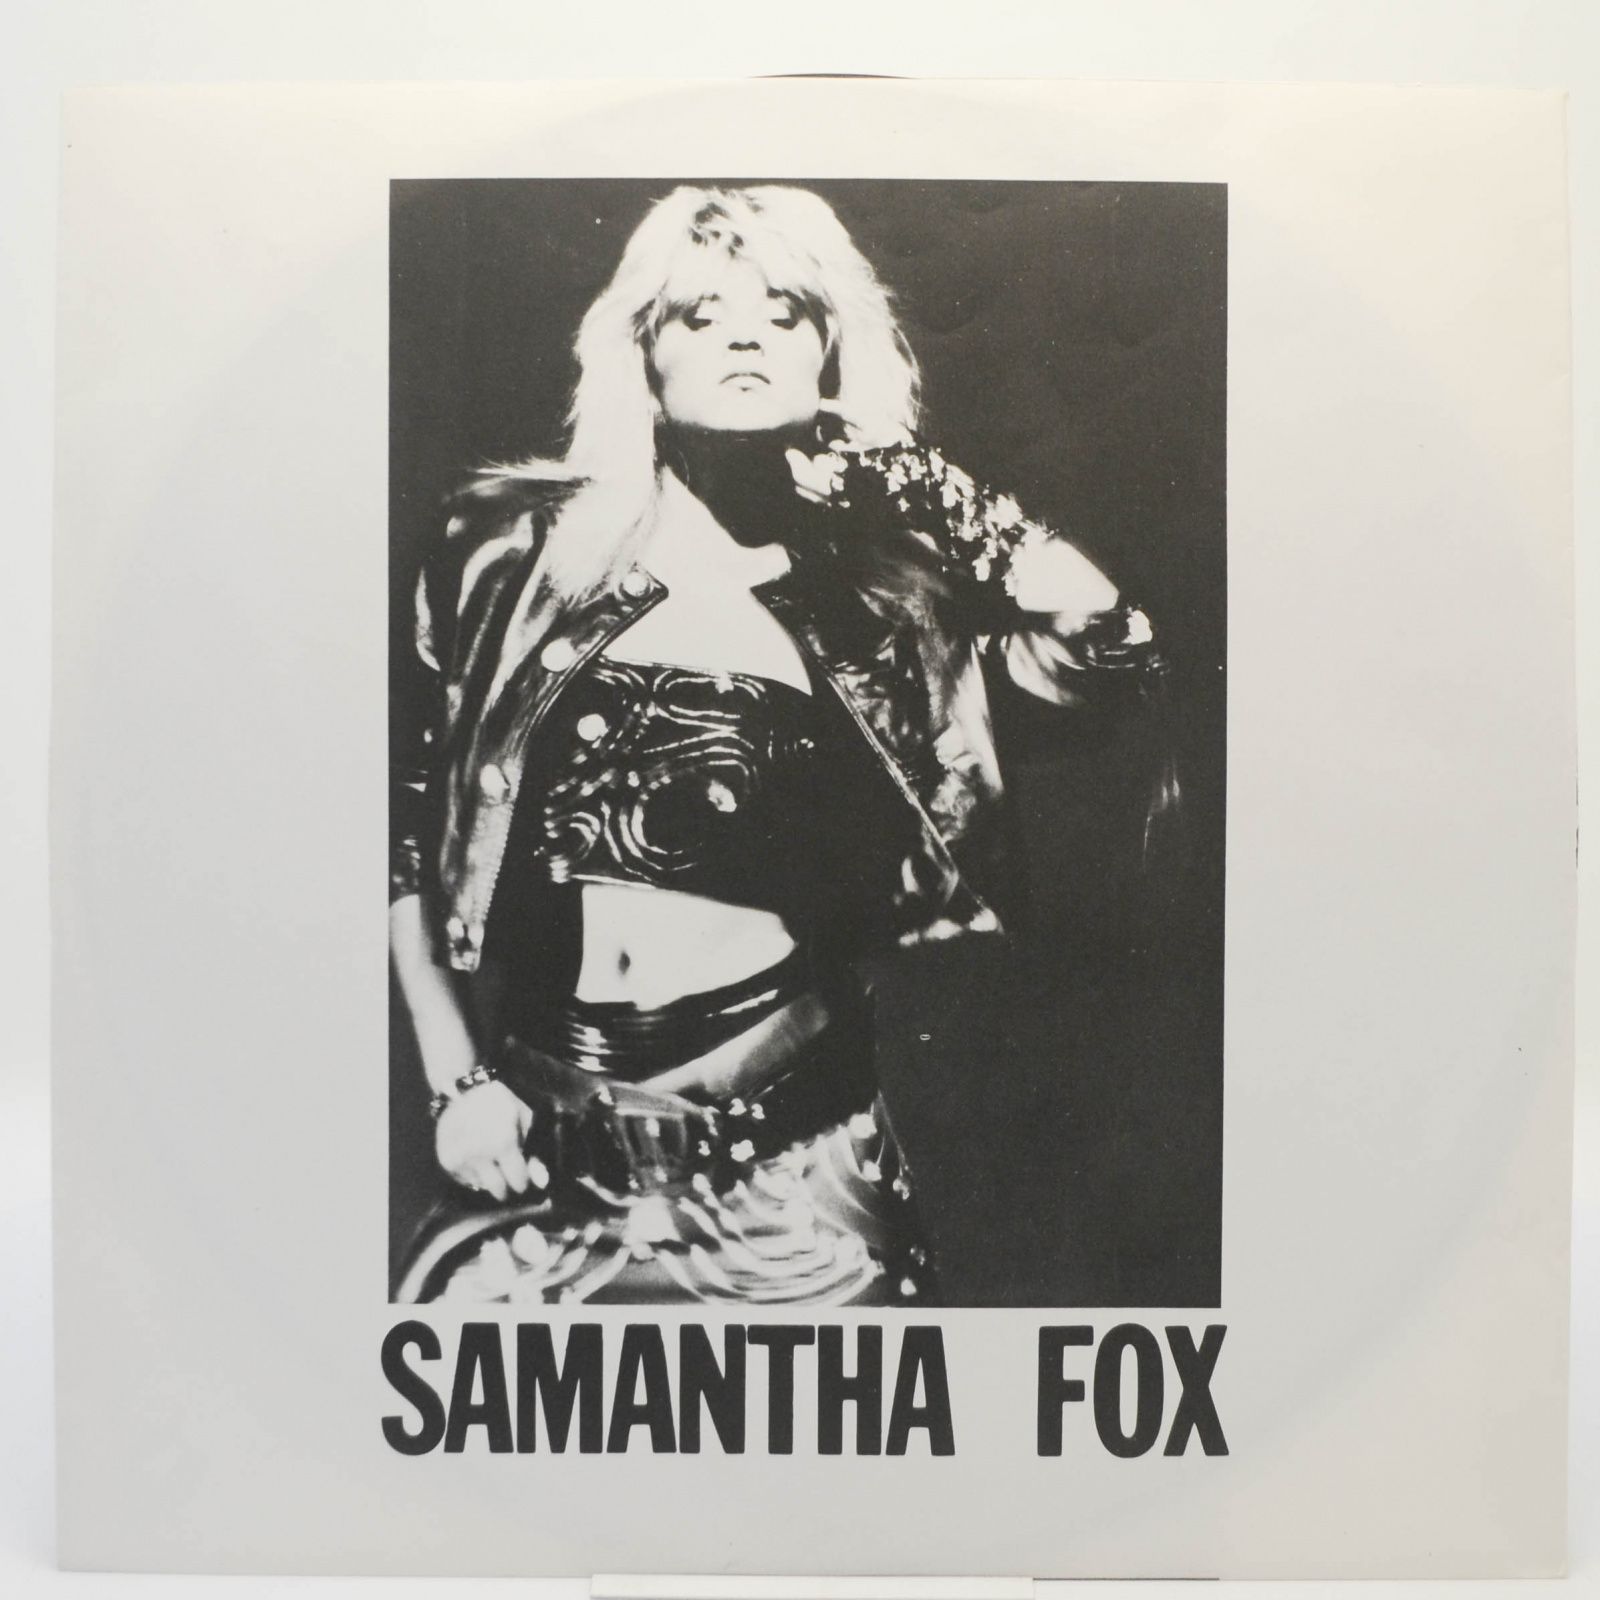 Samantha Fox — I Wanna Have Some Fun, 1989